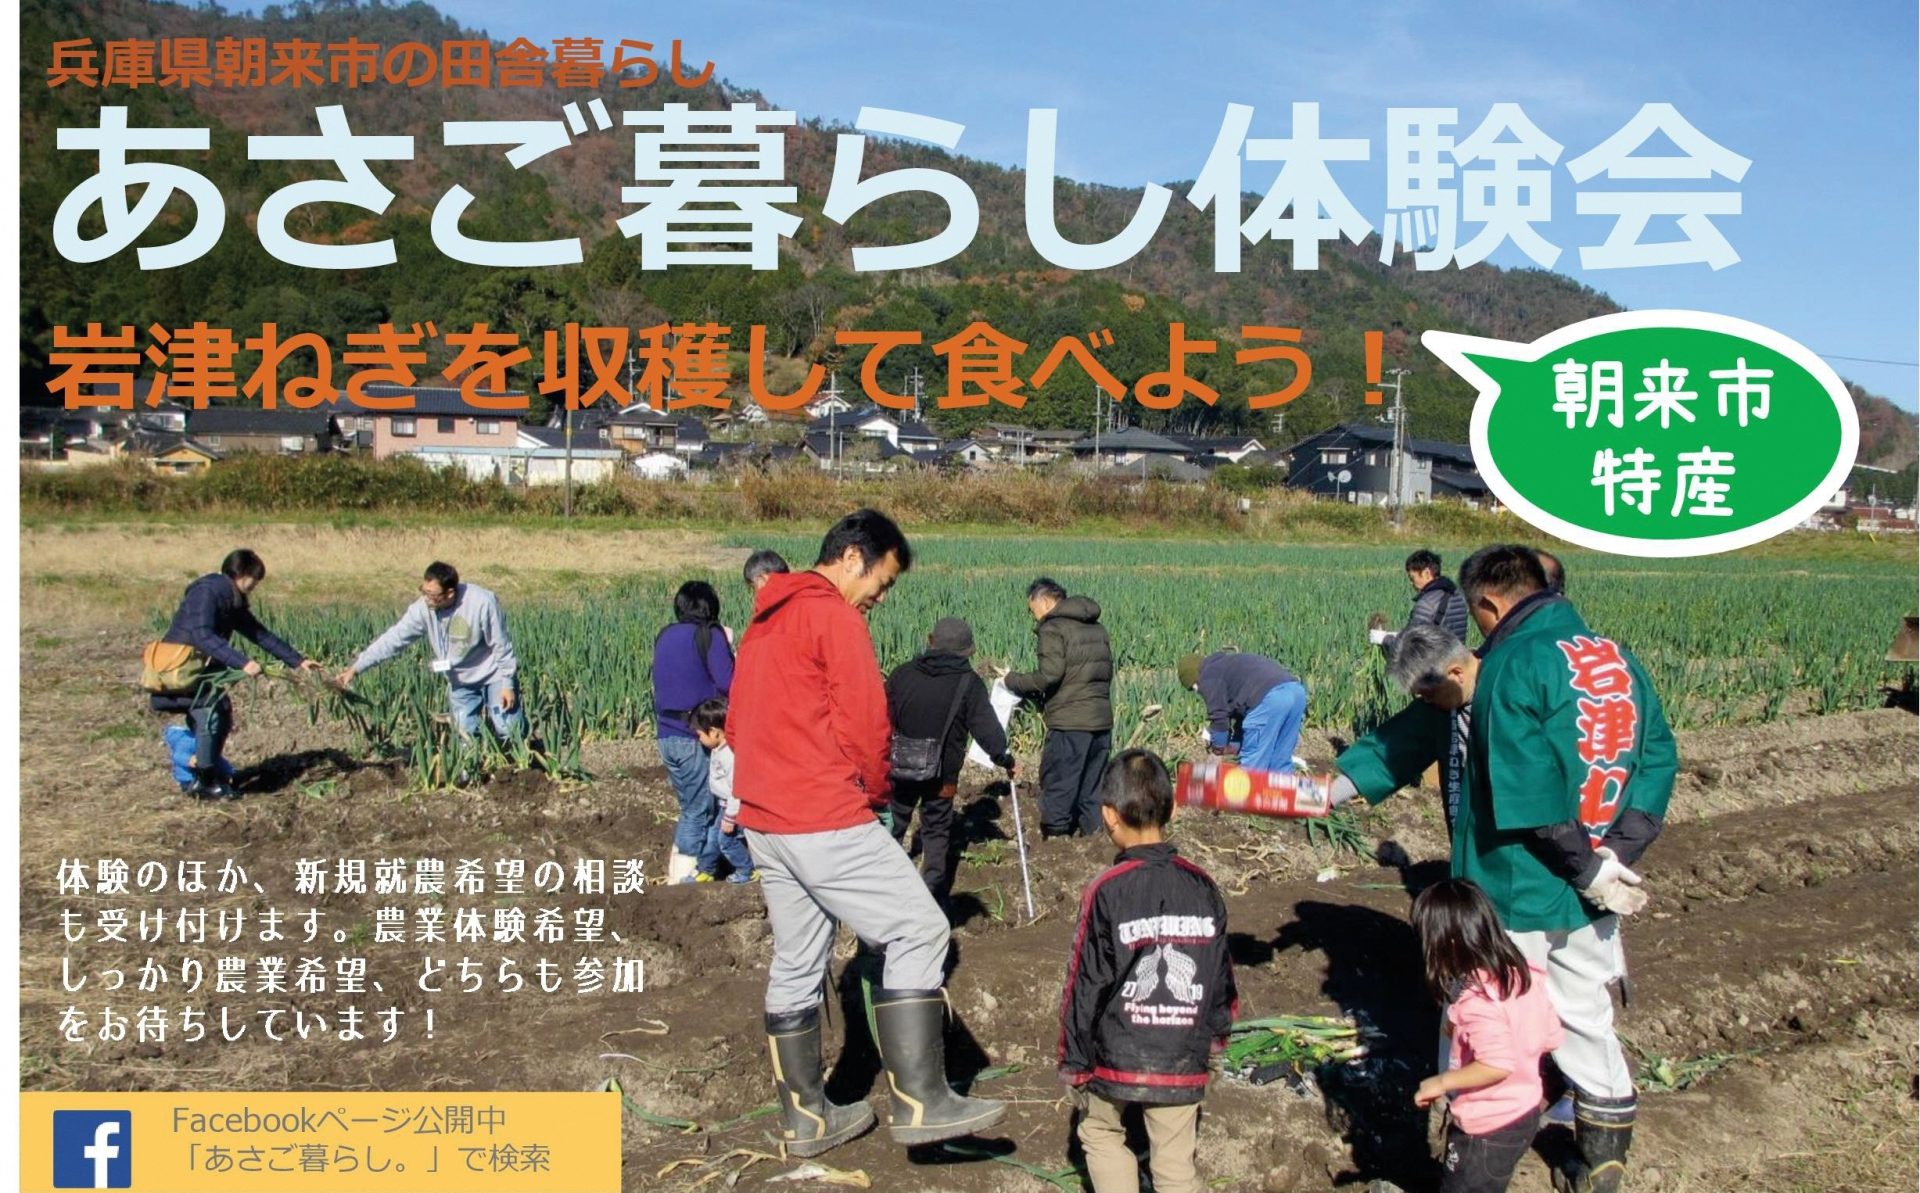 あさご暮らし体験会 岩津ねぎを収穫して食べよう！ | 移住関連イベント情報